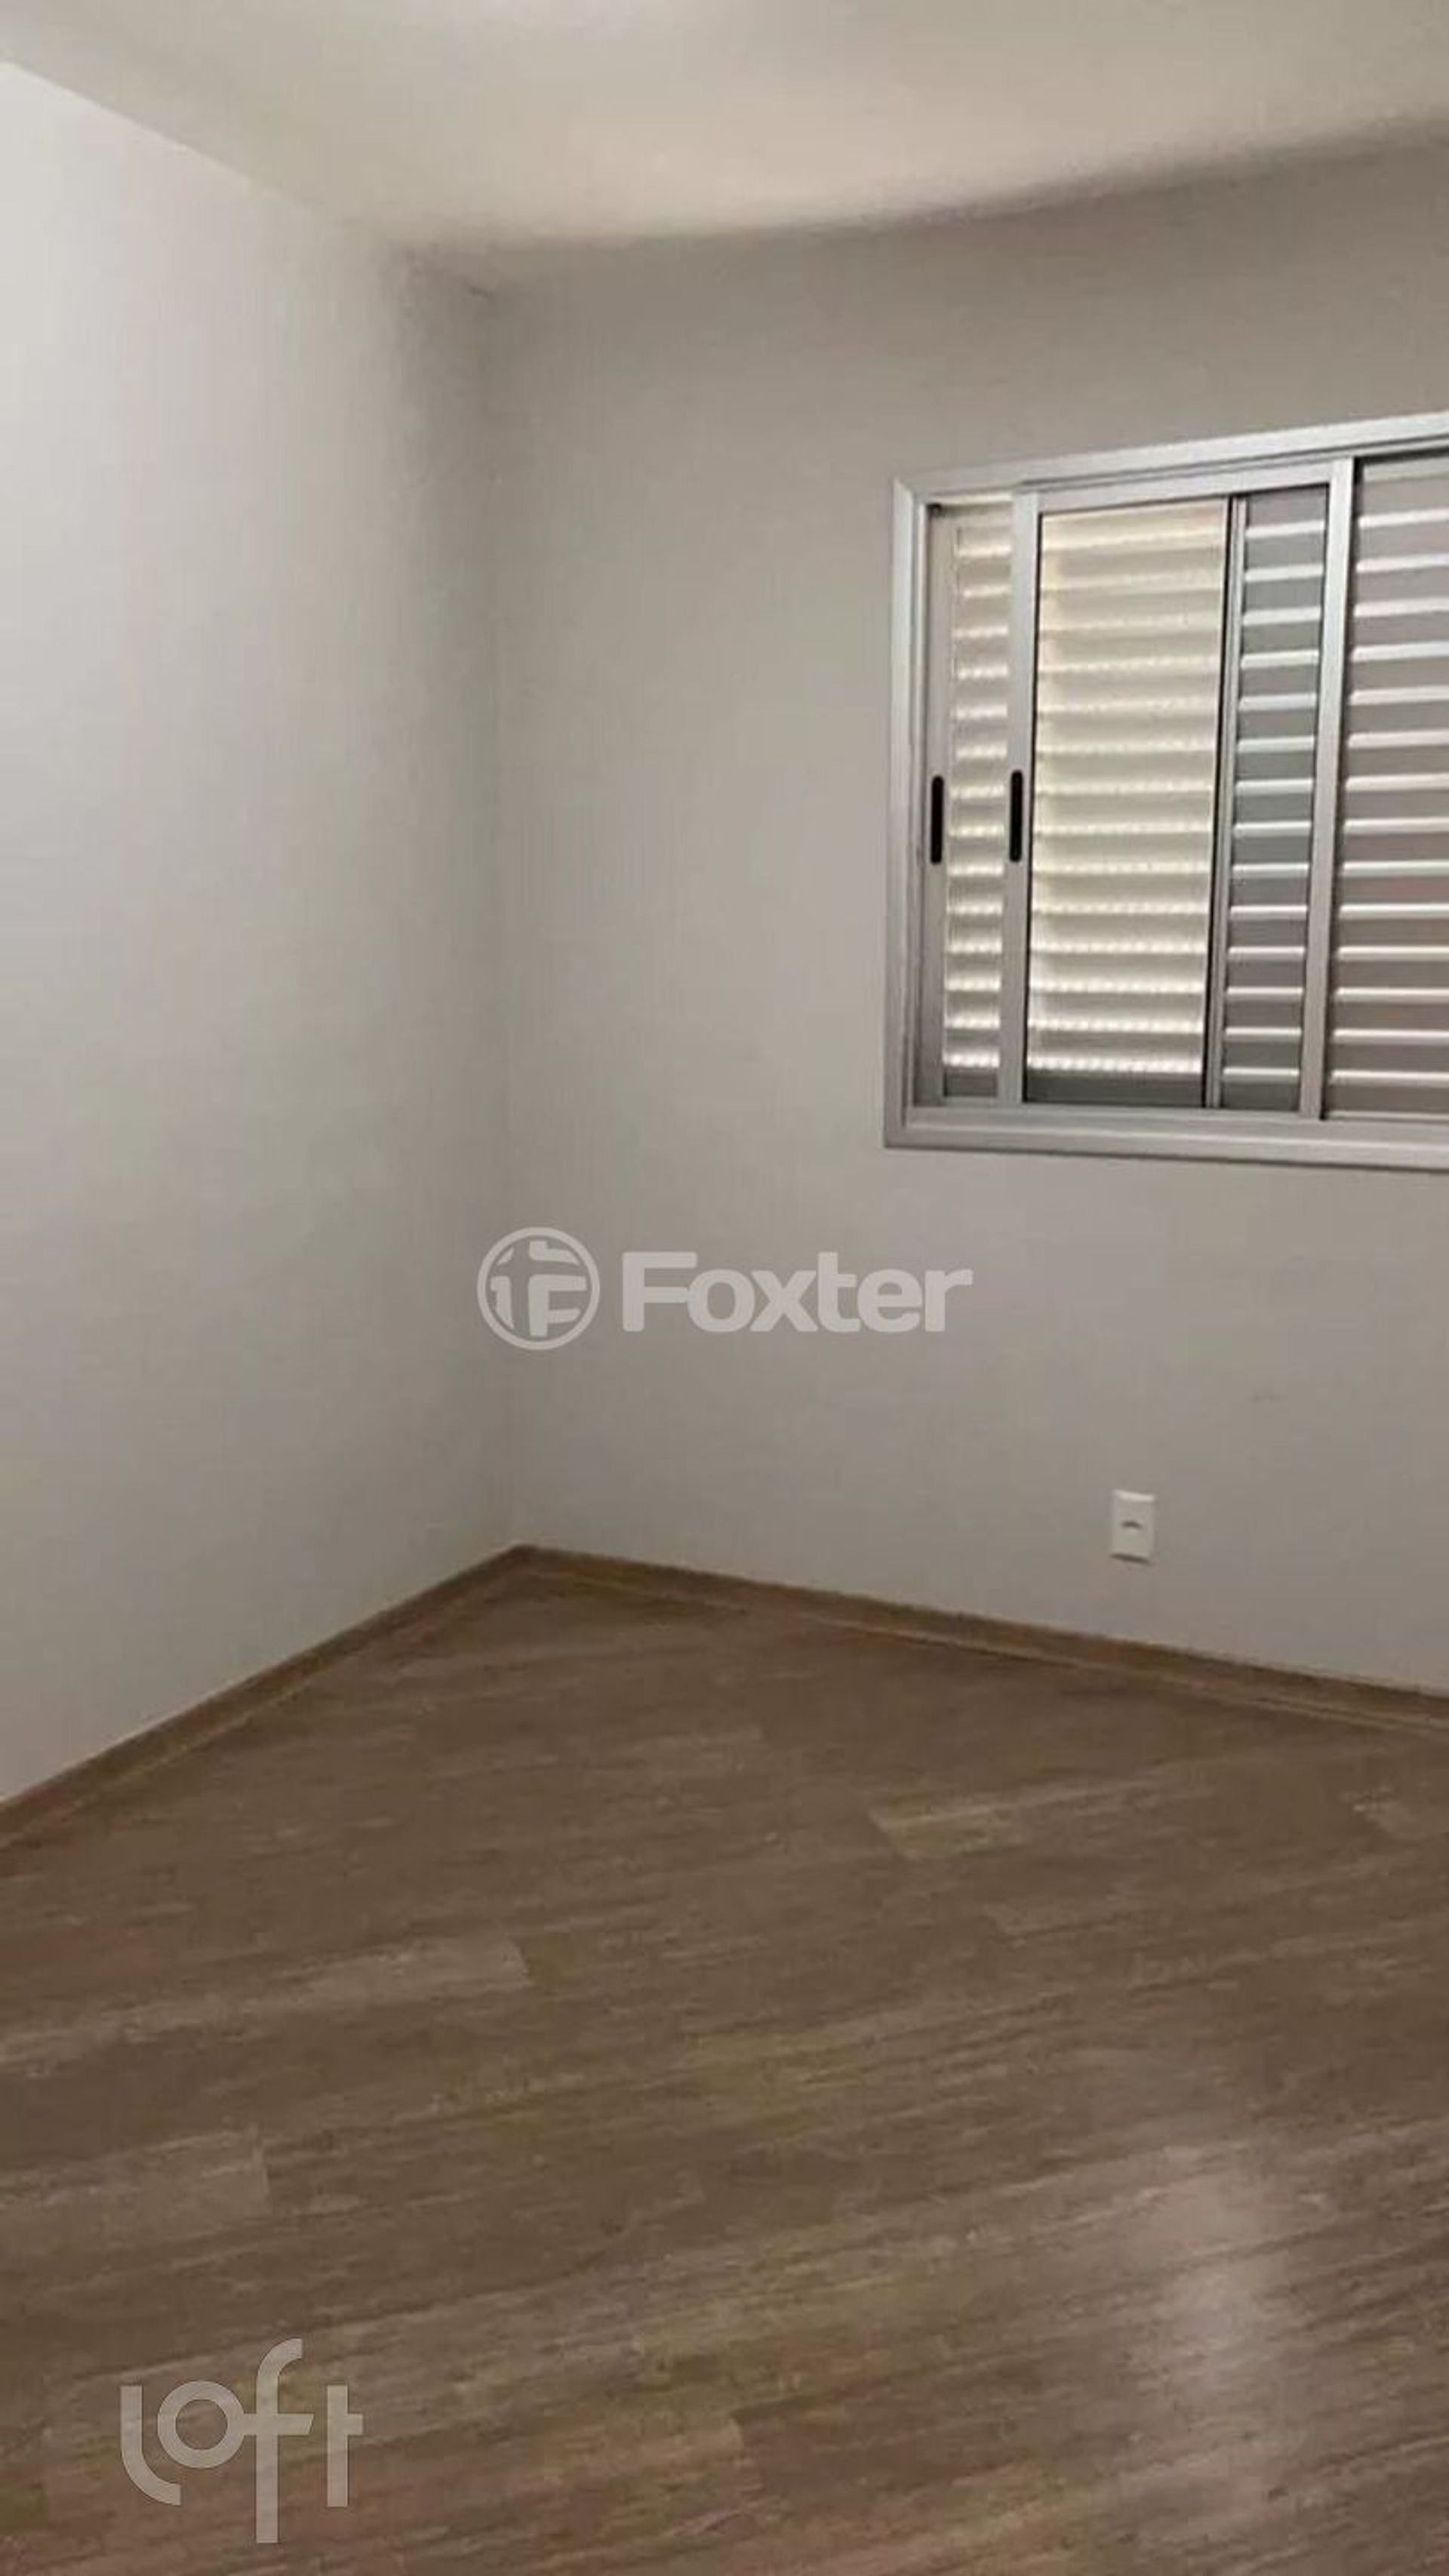 Apartamento 2 dorms à venda Rua Eugênio de Freitas, Vila Guilherme - São Paulo